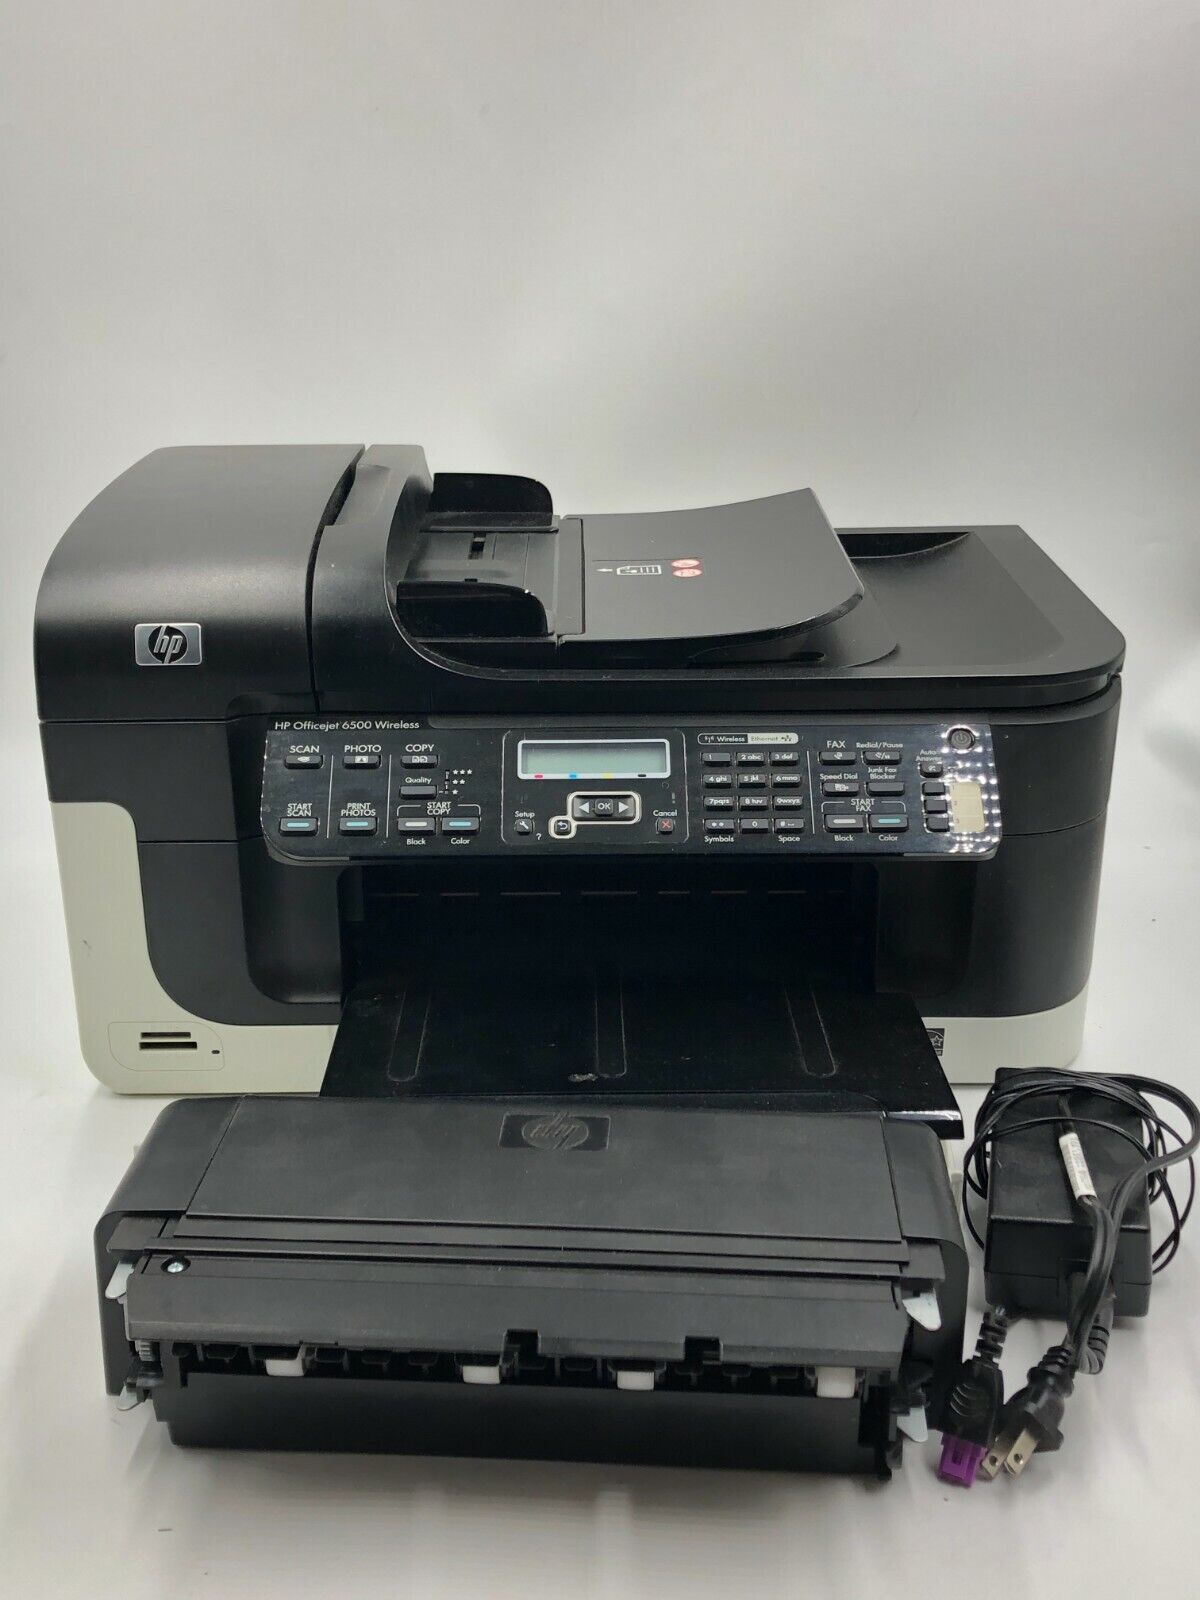 middernacht reinigen Verwant HP Officejet 6500 E709n All-In-One Inkjet Printer Scanner Fax Wireless  26649064432 | eBay